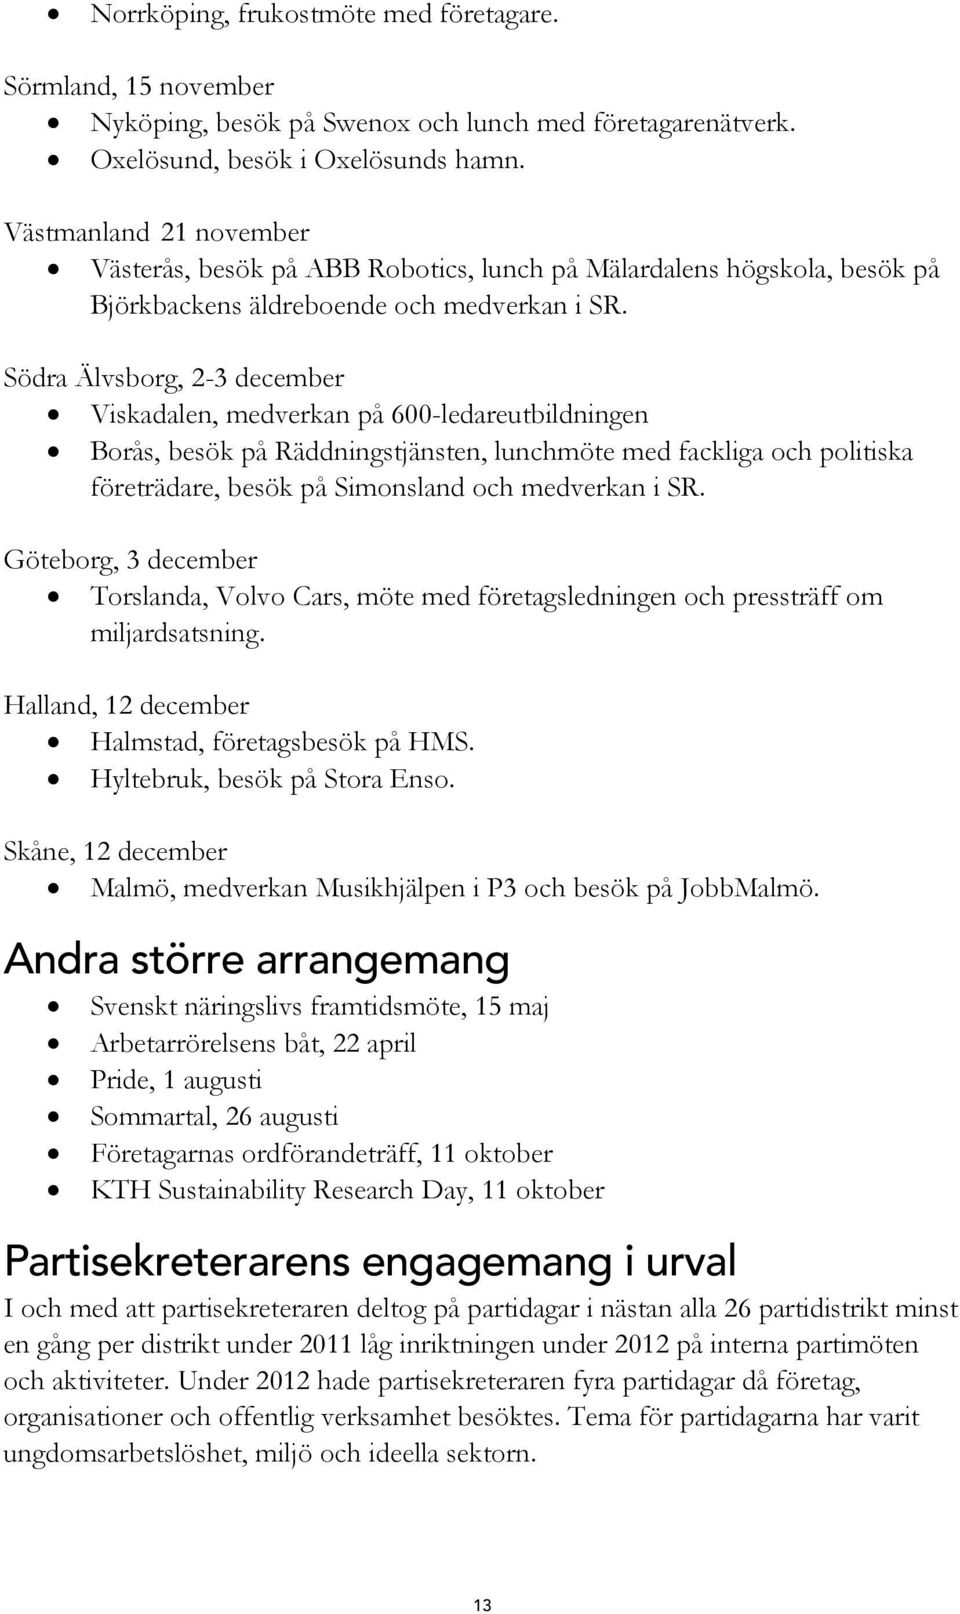 Södra Älvsborg, 2-3 december Viskadalen, medverkan på 600-ledareutbildningen Borås, besök på Räddningstjänsten, lunchmöte med fackliga och politiska företrädare, besök på Simonsland och medverkan i